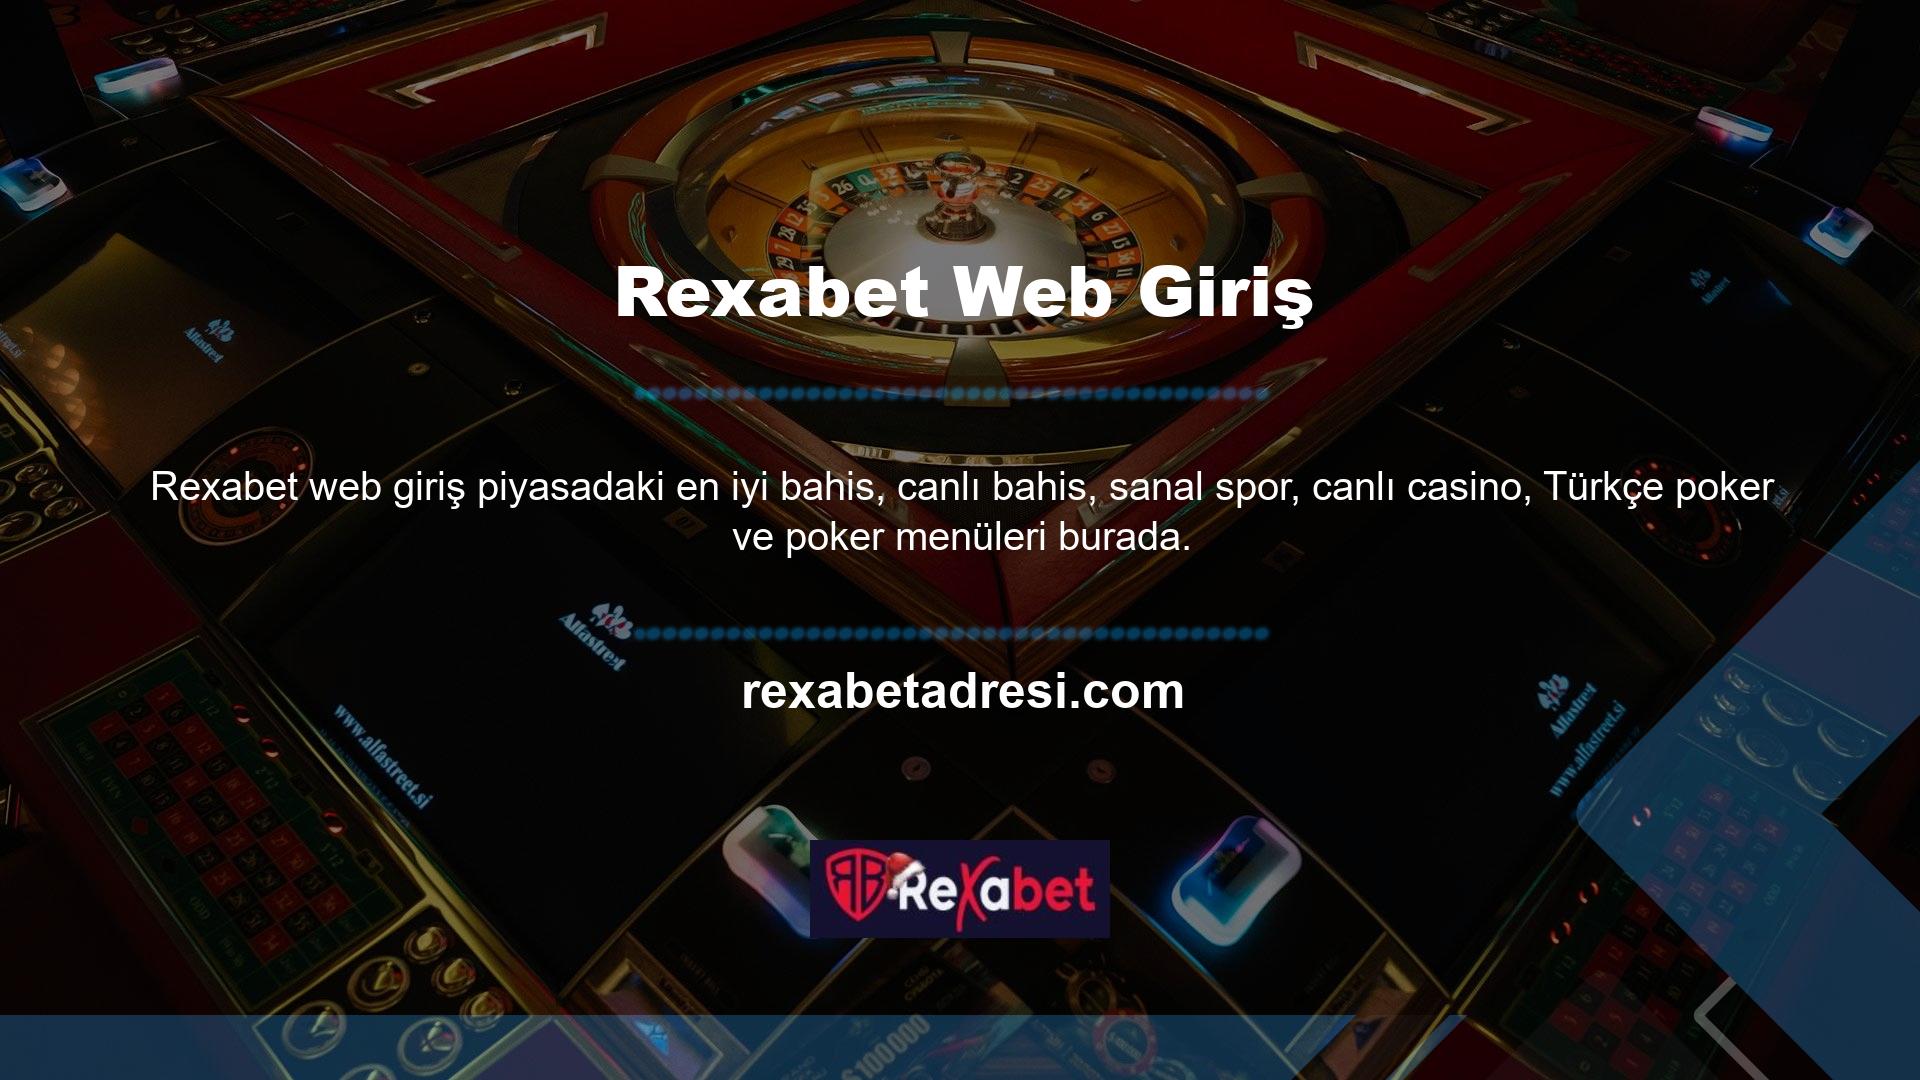 Geçmişte, casino endüstrisinde web sitelerinde bir artış görüldü